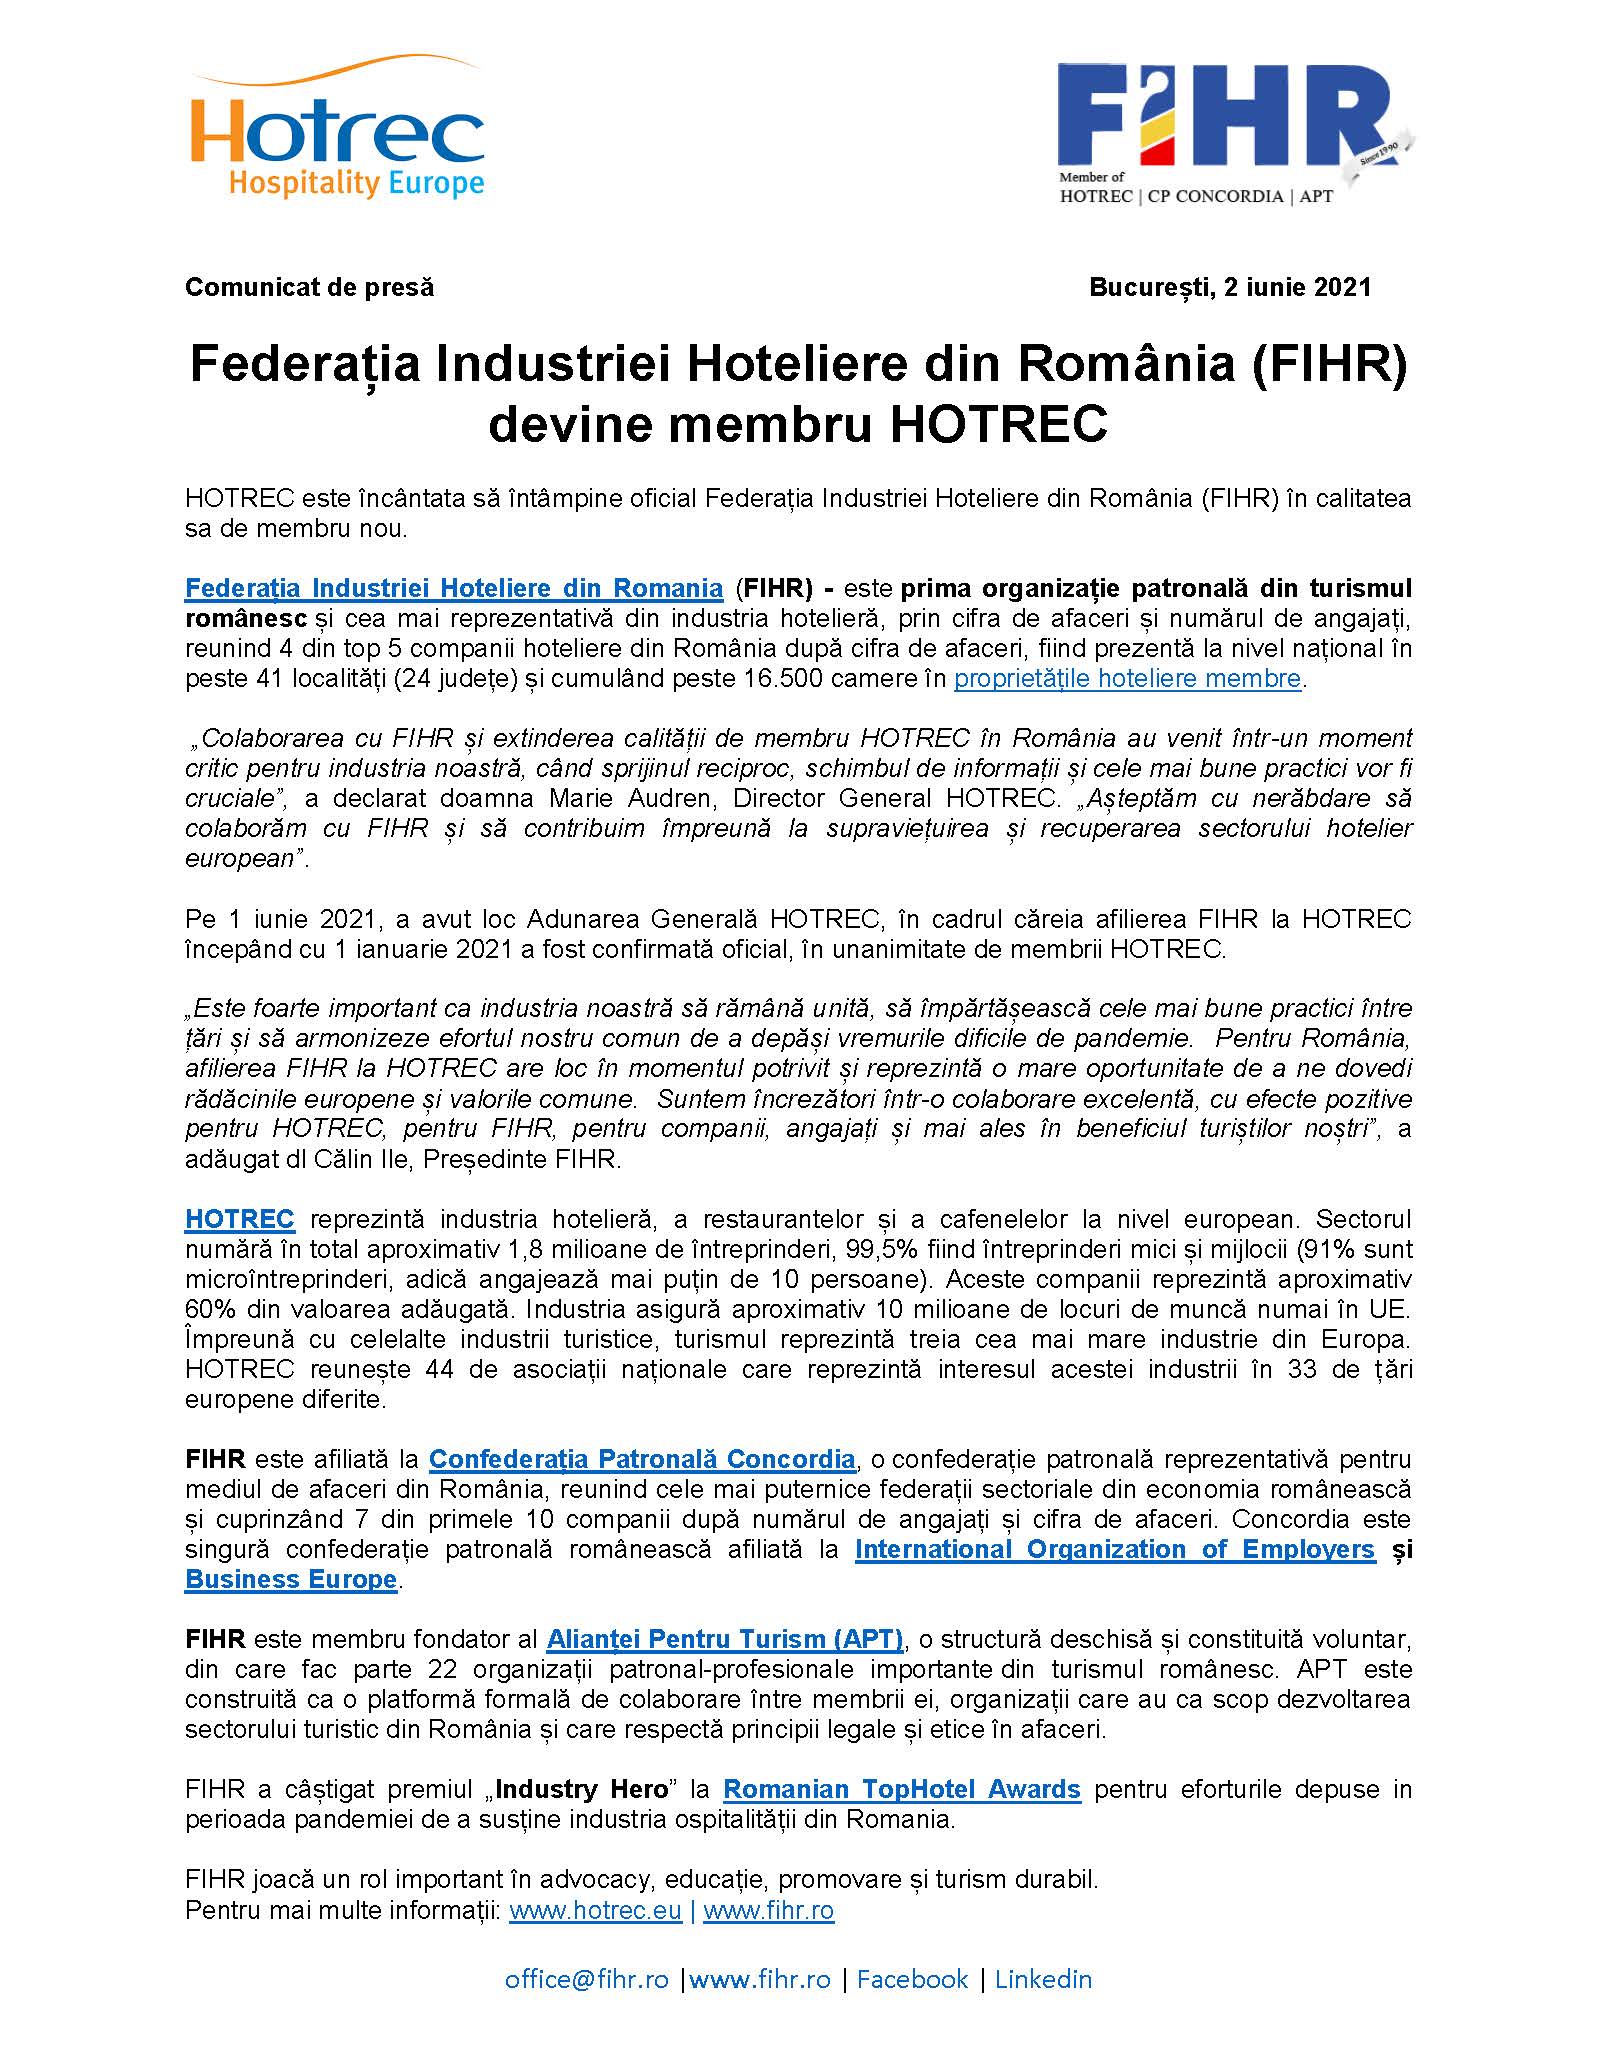 Federația Industriei Hoteliere din România (FIHR) devine membru HOTREC 